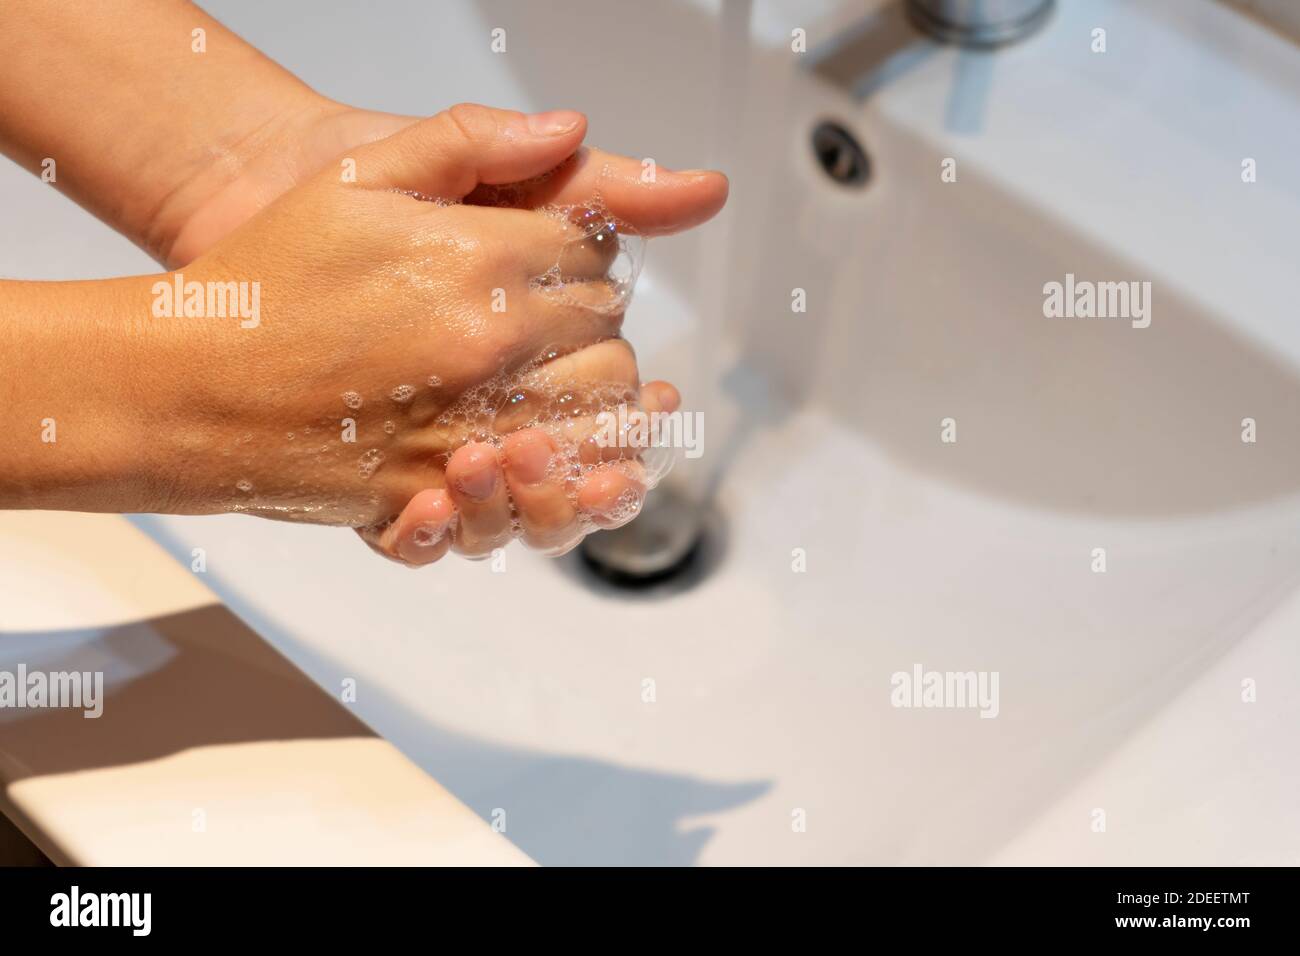 Frau Händewaschen mit Seife in Waschbecken.Hygiene-Konzept, präventiver Schutz gegen Keime, Coronavirus oder covid-19. Stockfoto